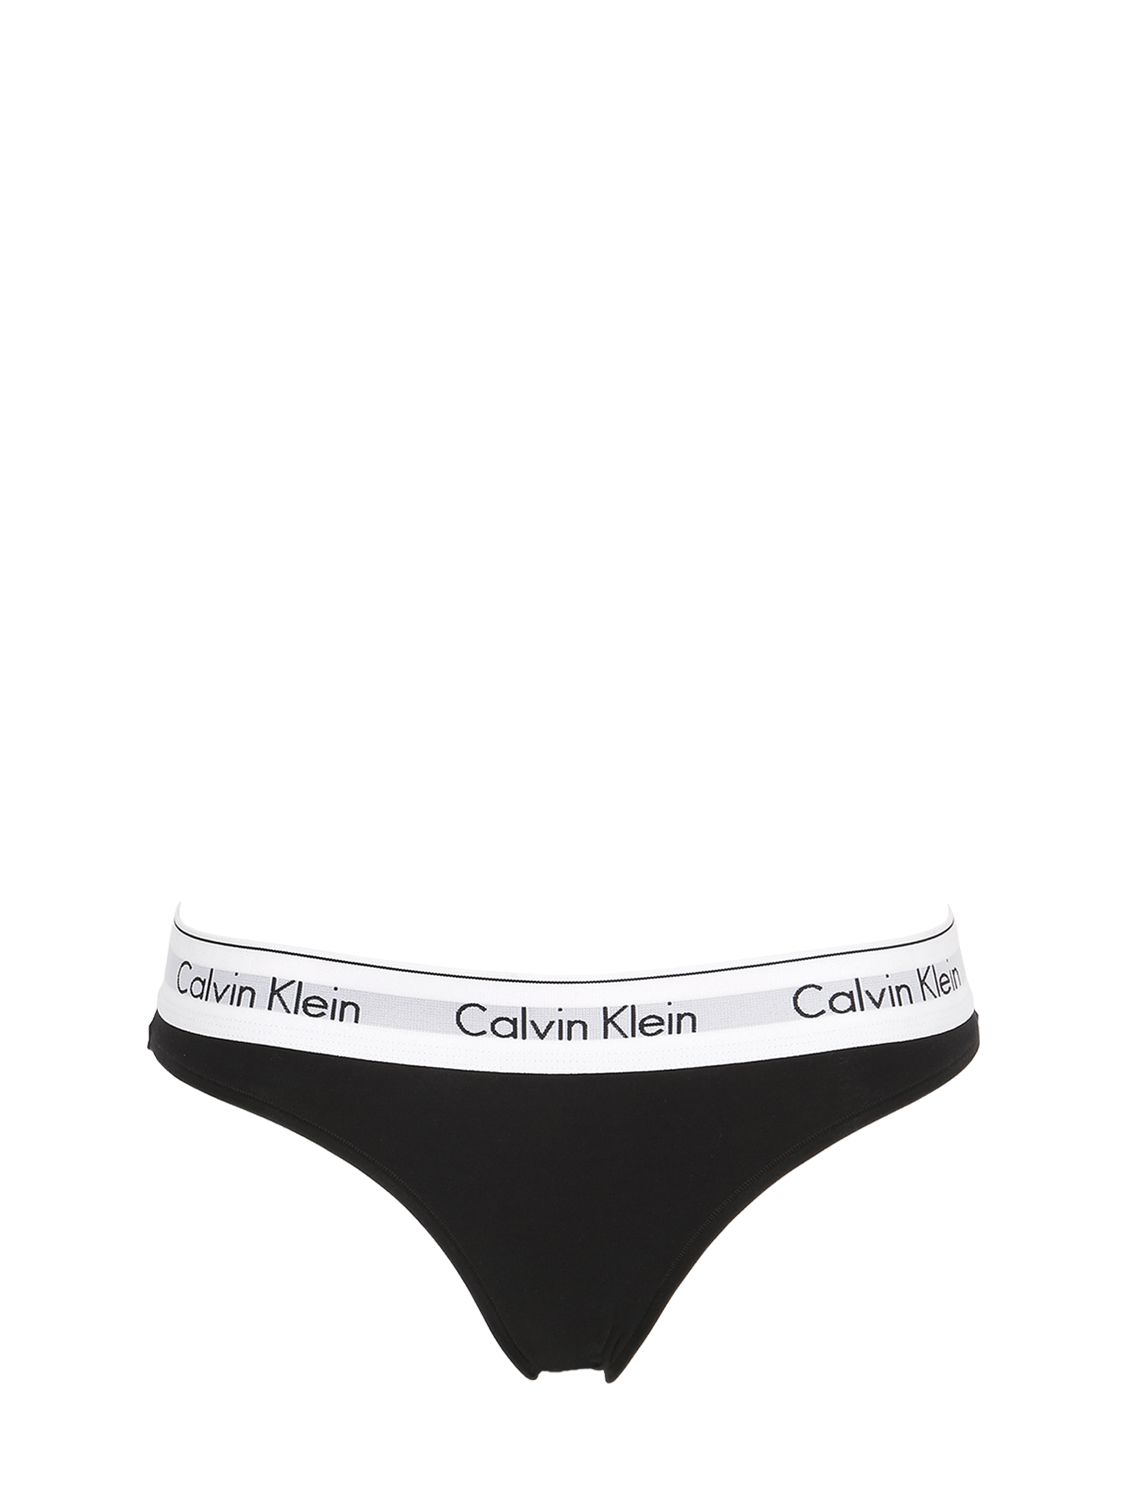 calvin klein underwear pas cher